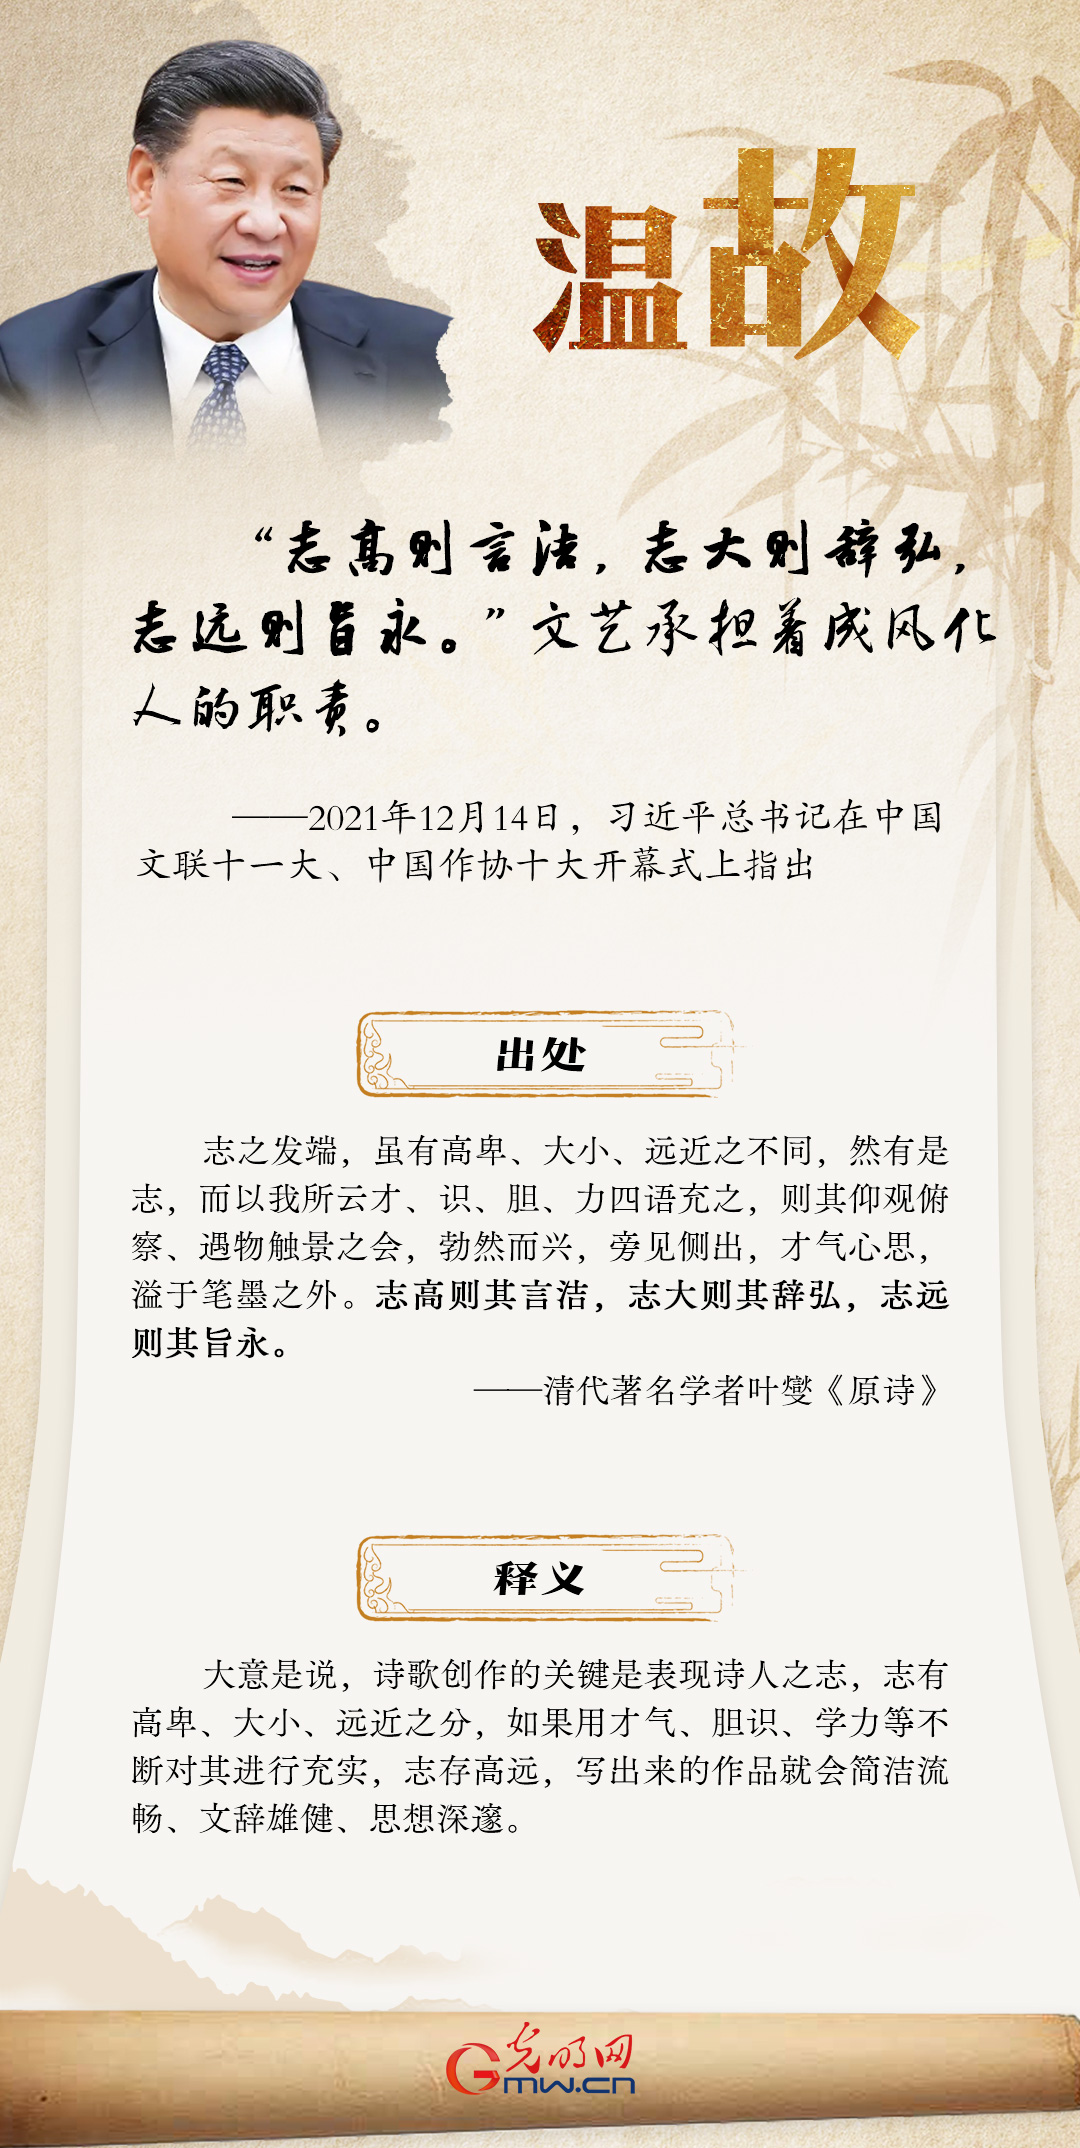 海报丨【温故】习近平总书记这样引用古语寄语广大文艺工作者